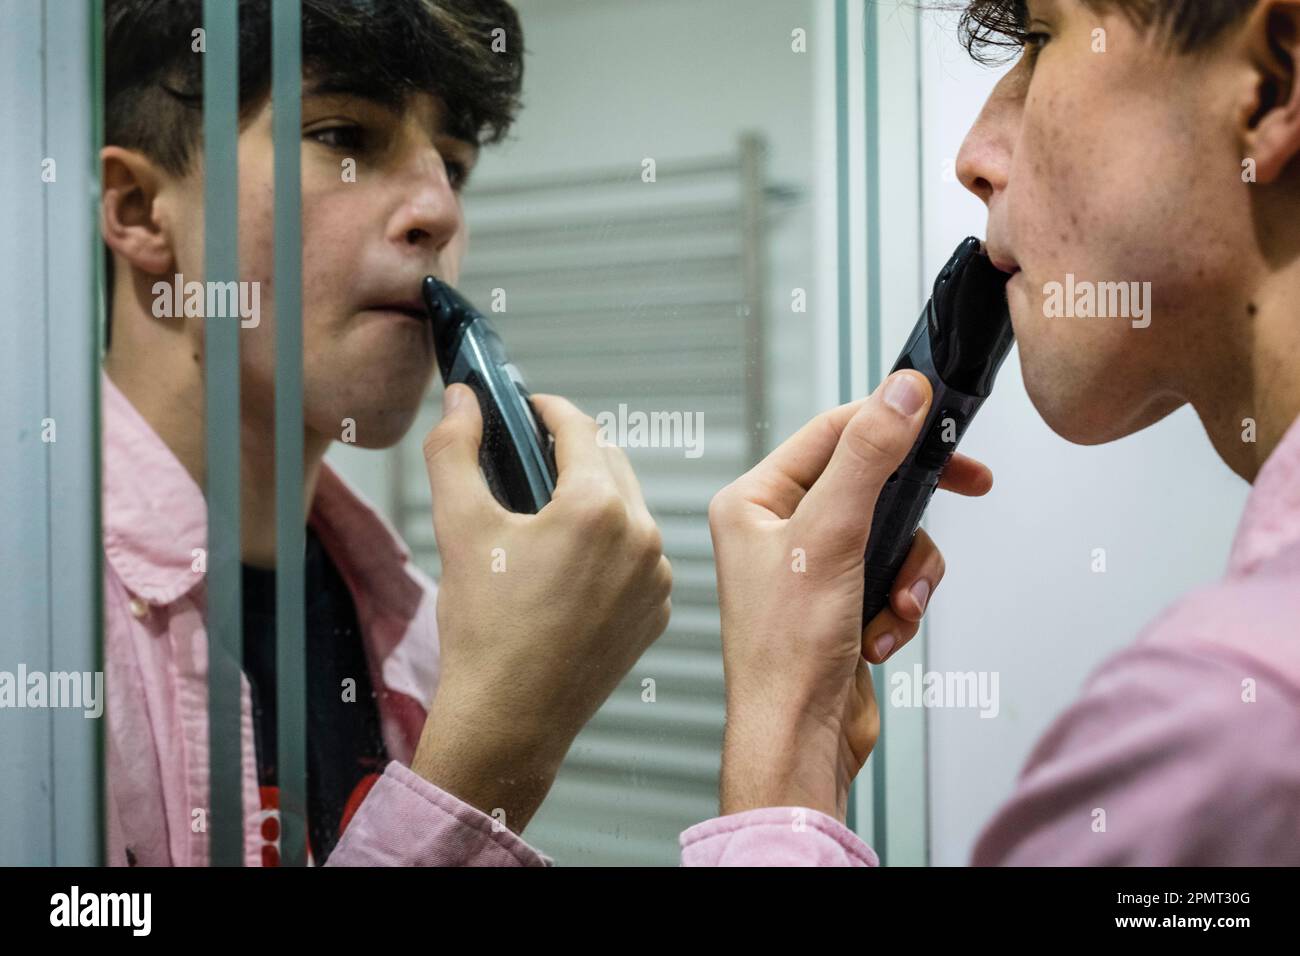 Rasage des adolescents dans le miroir, concentré avec Reflection. Banque D'Images